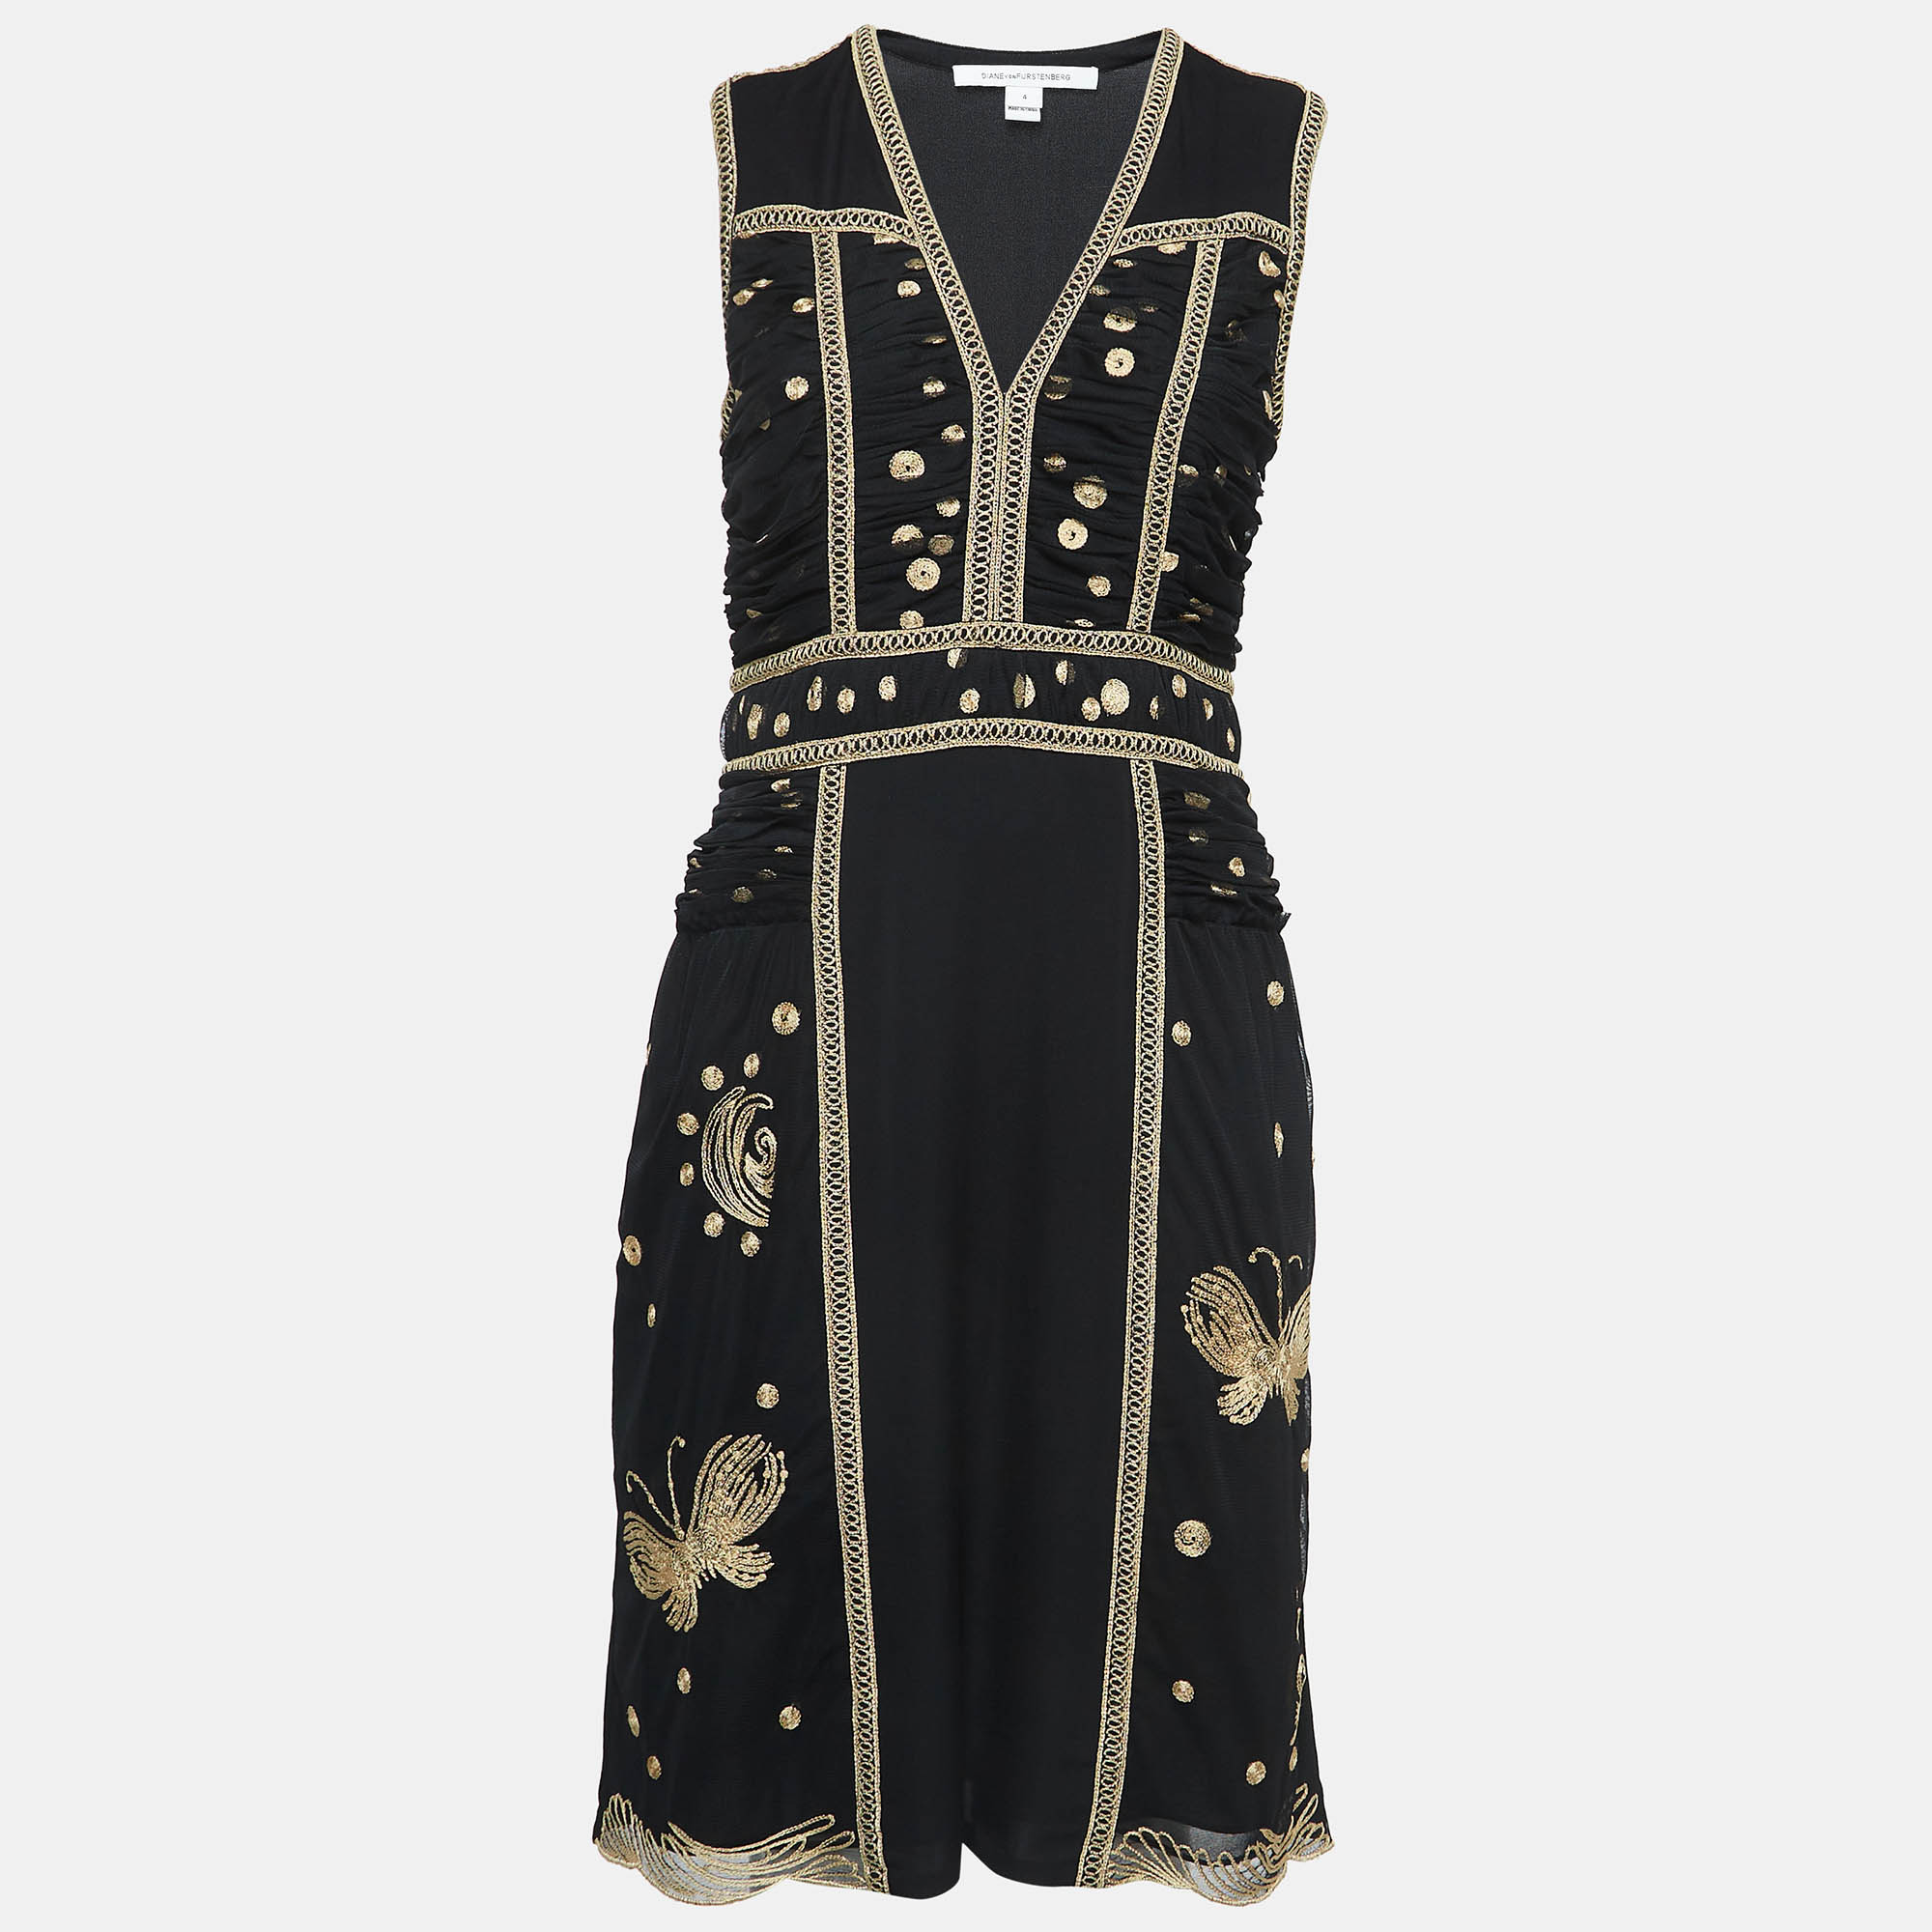 Diane von furstenberg black embroidered mesh and silk sleeveless tyche dress s